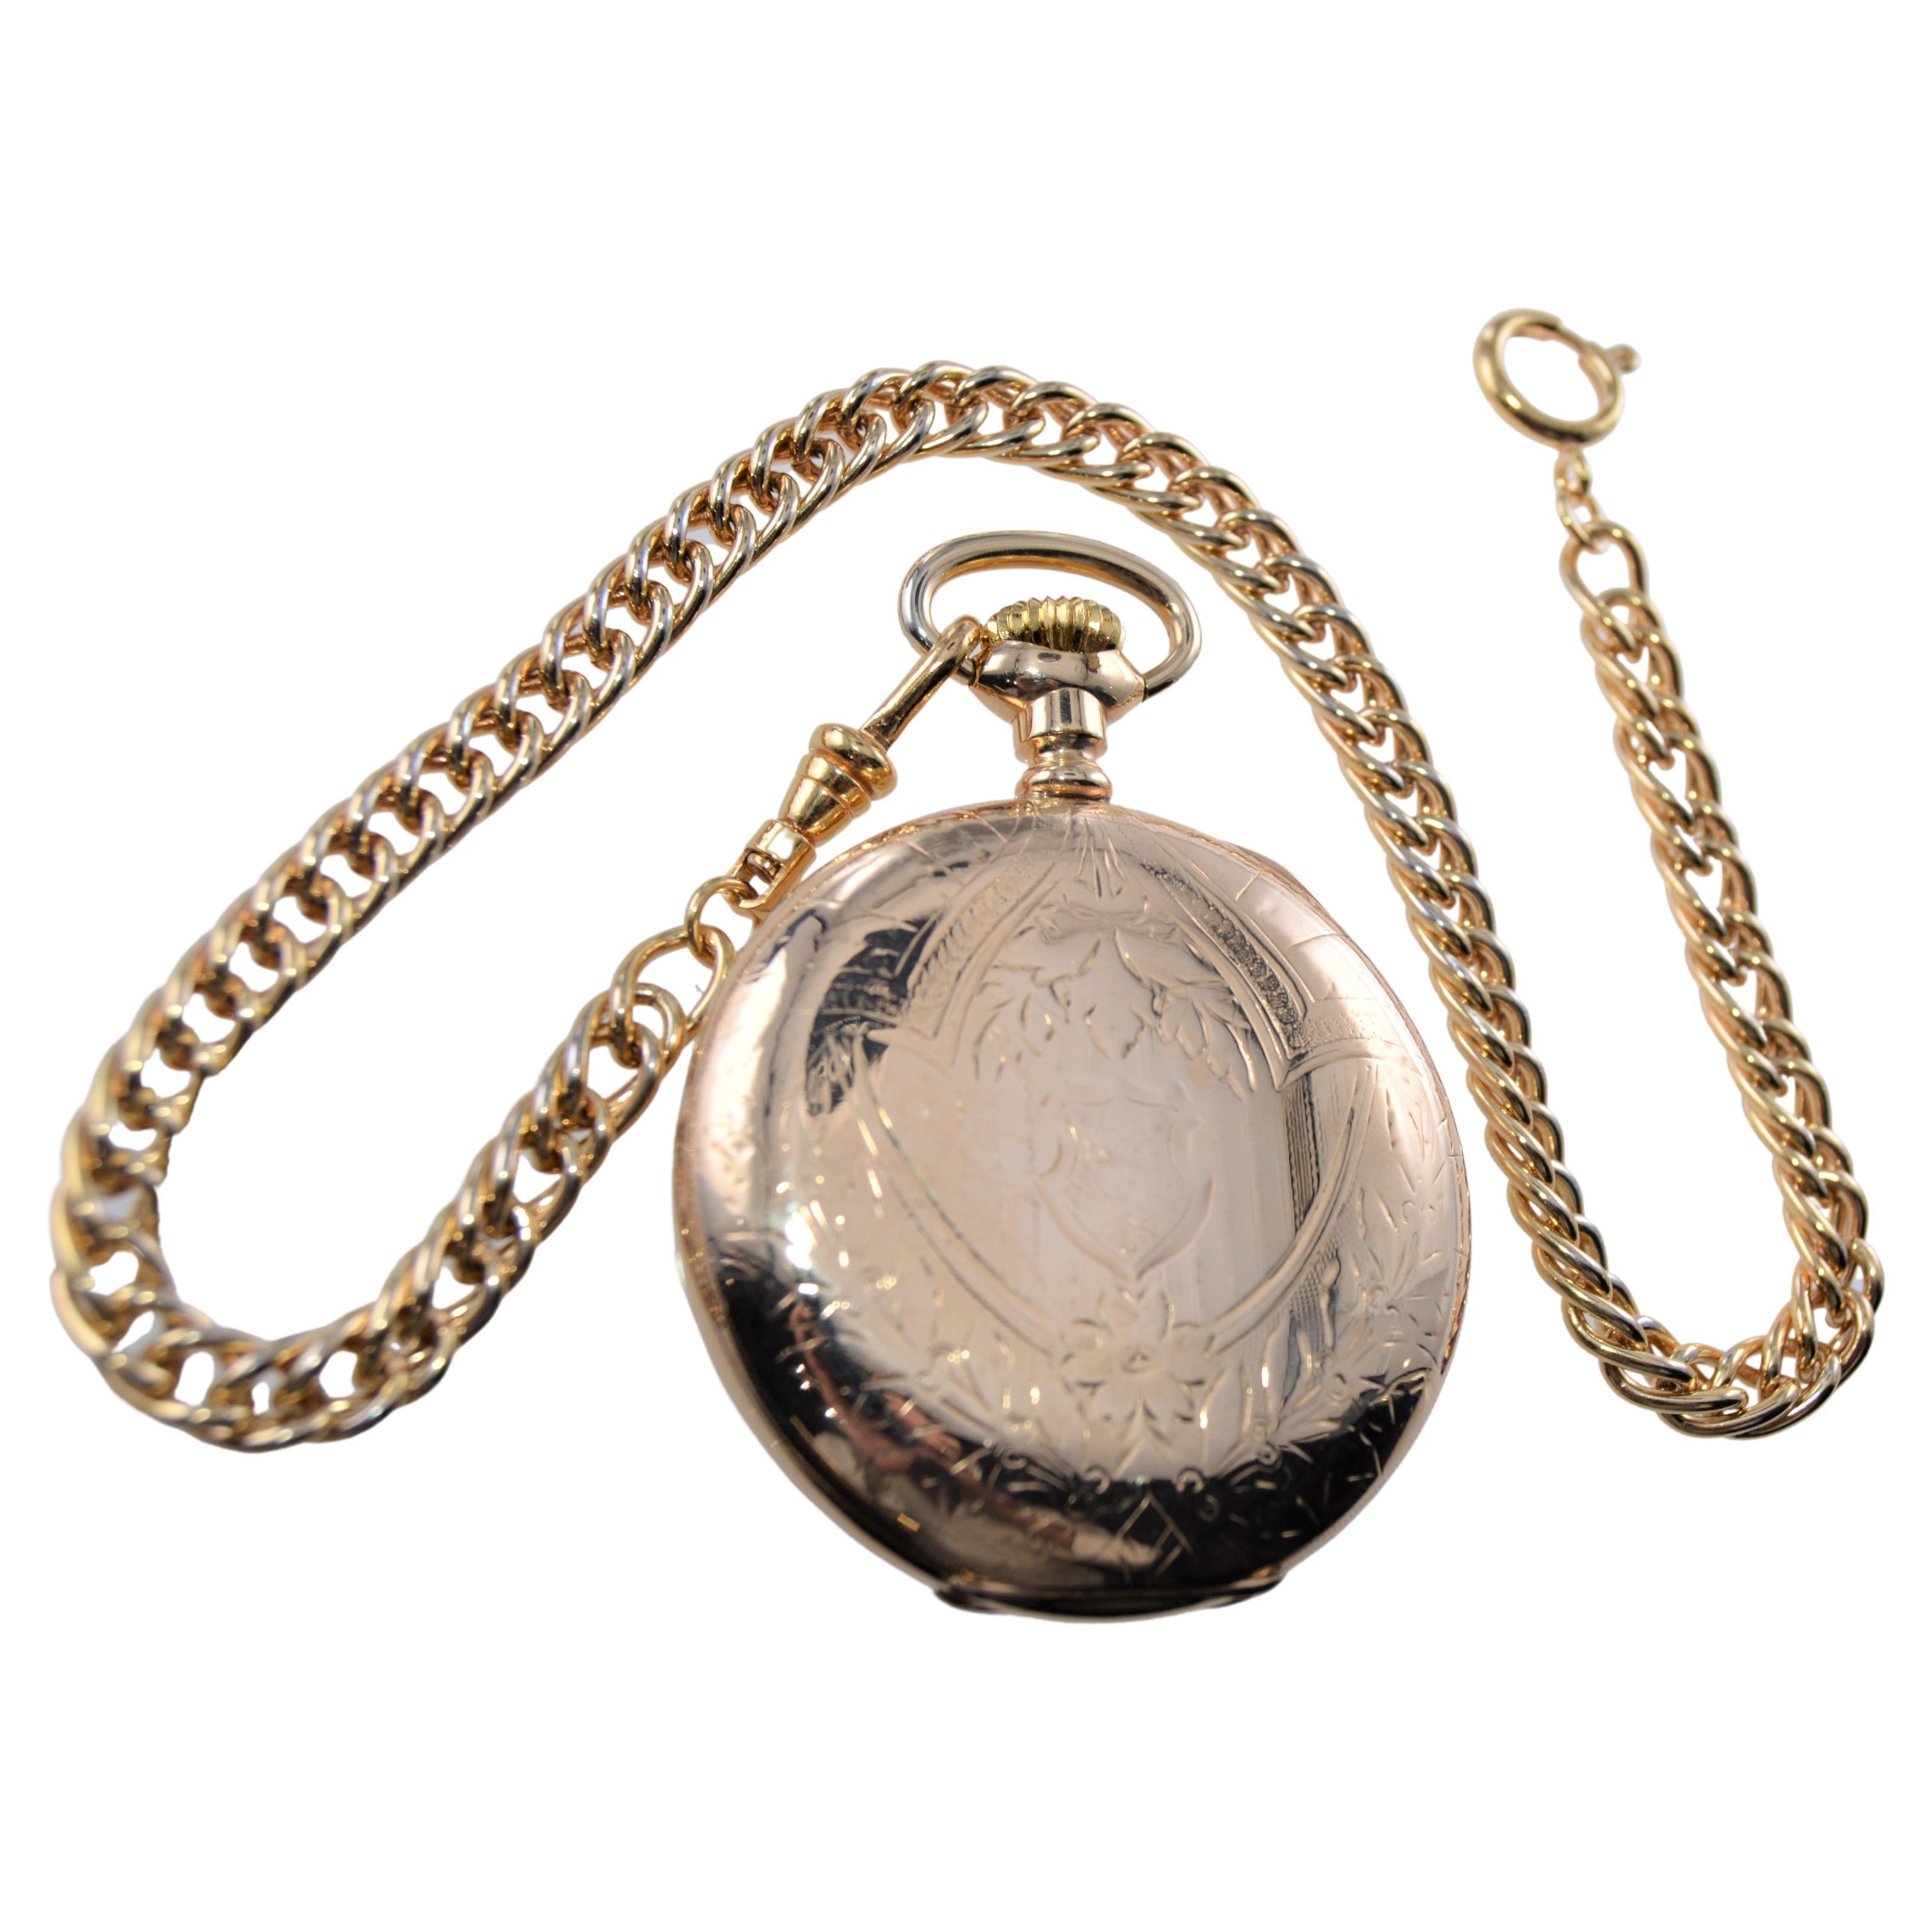 FABRIK / HAUS: Waltham Watch Company
STIL / REFERENZ: Taschenuhr mit offenem Gesicht / Größe 16 / Handgravur
METALL / MATERIAL: Gelbgold gefüllt
CIRCA / JAHR: 1905 
ABMESSUNGEN / GRÖSSE:  Durchmesser 50 mm 
UHRWERK / KALIBER: Handaufzug / 17 Jewels